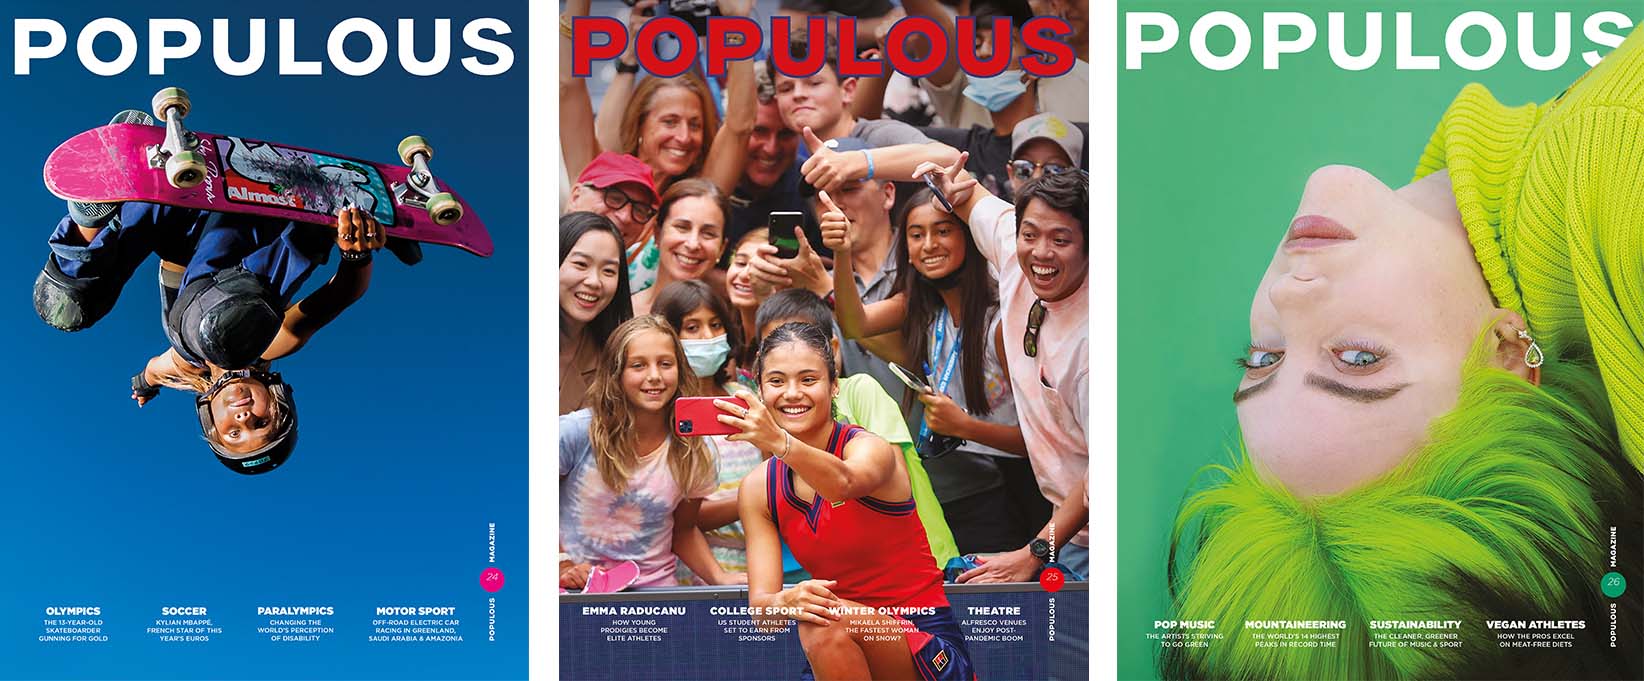 Magazine - Populous